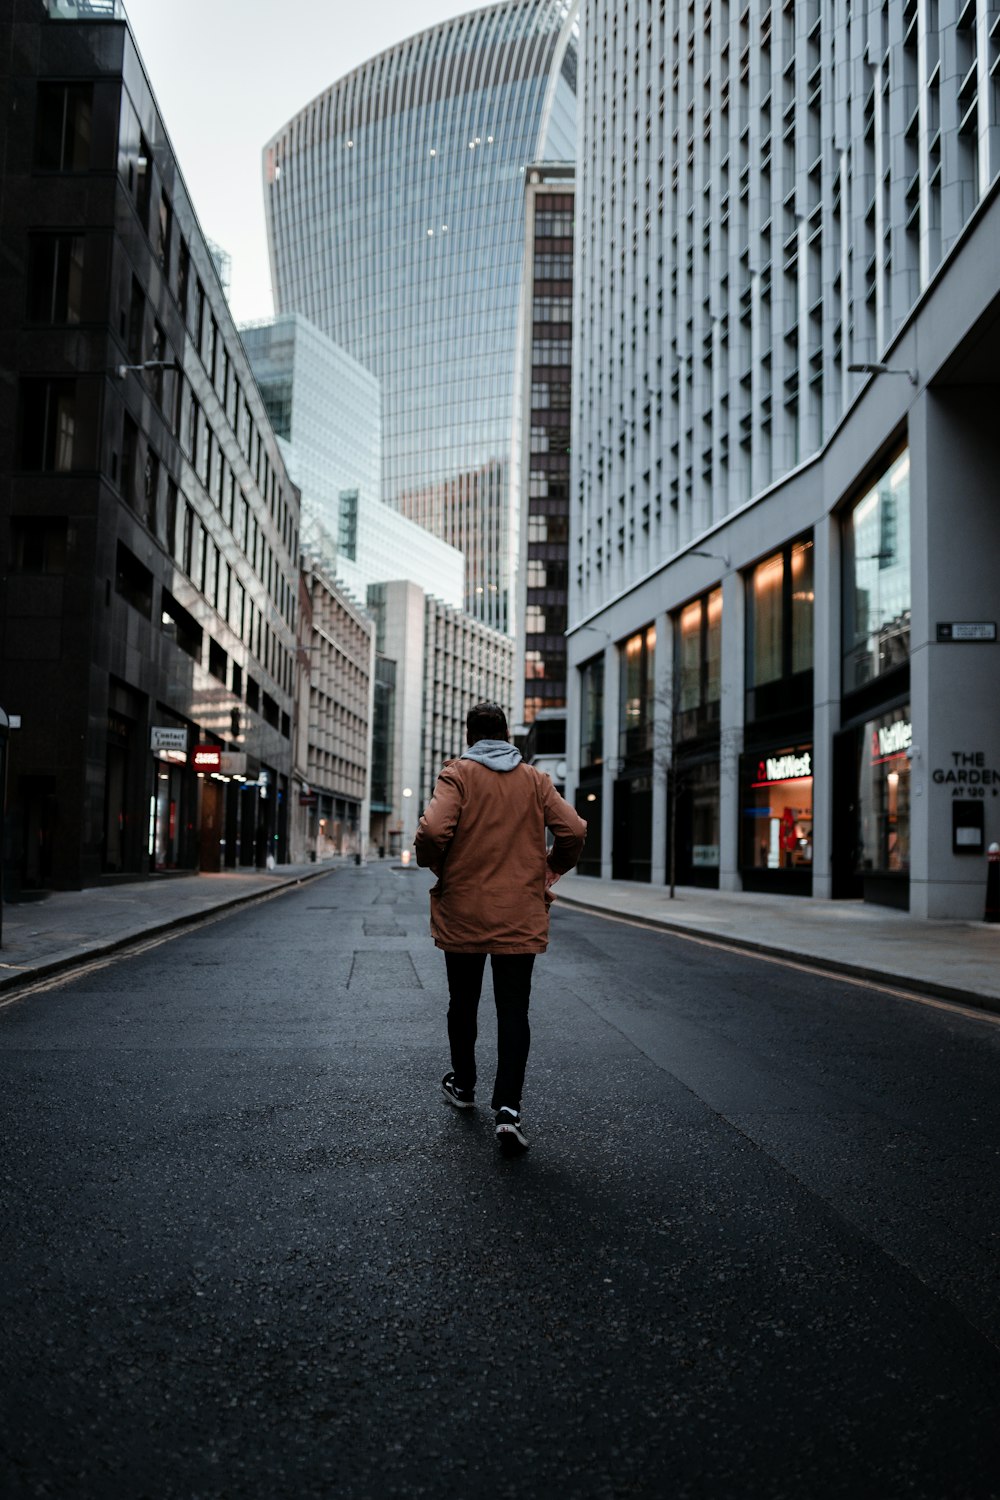 man in brown jacket walking on sidewalk during daytime